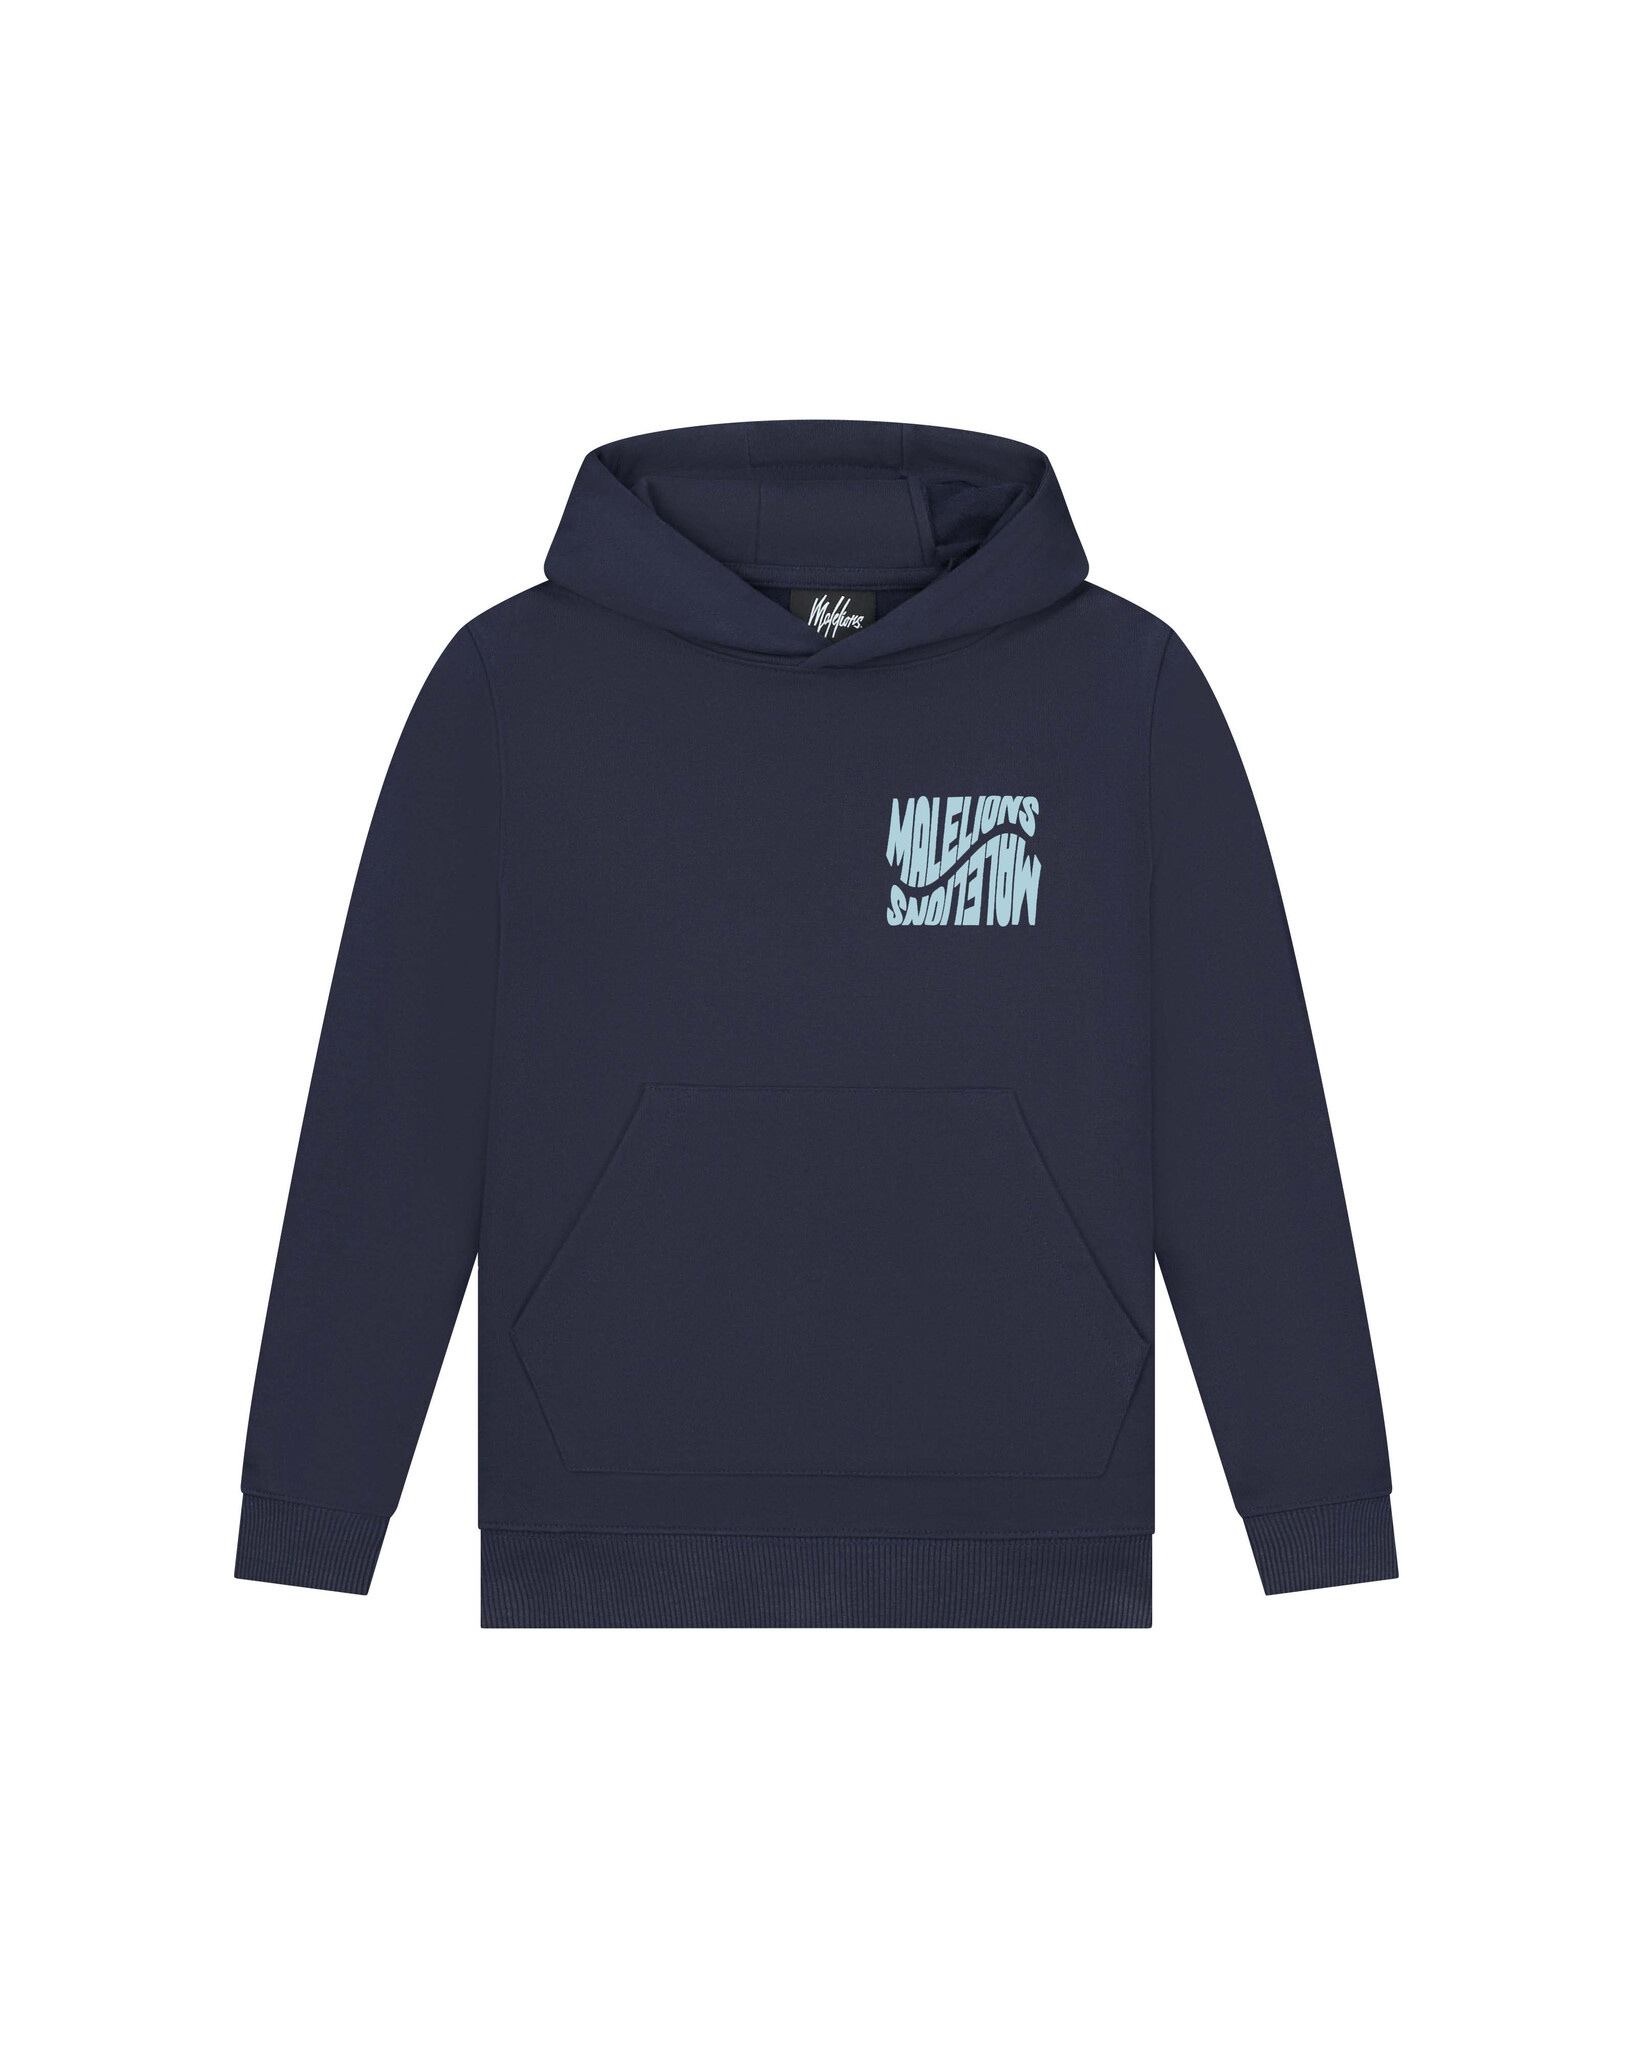 Jongens hoodie Wave graphic - Navy blauw